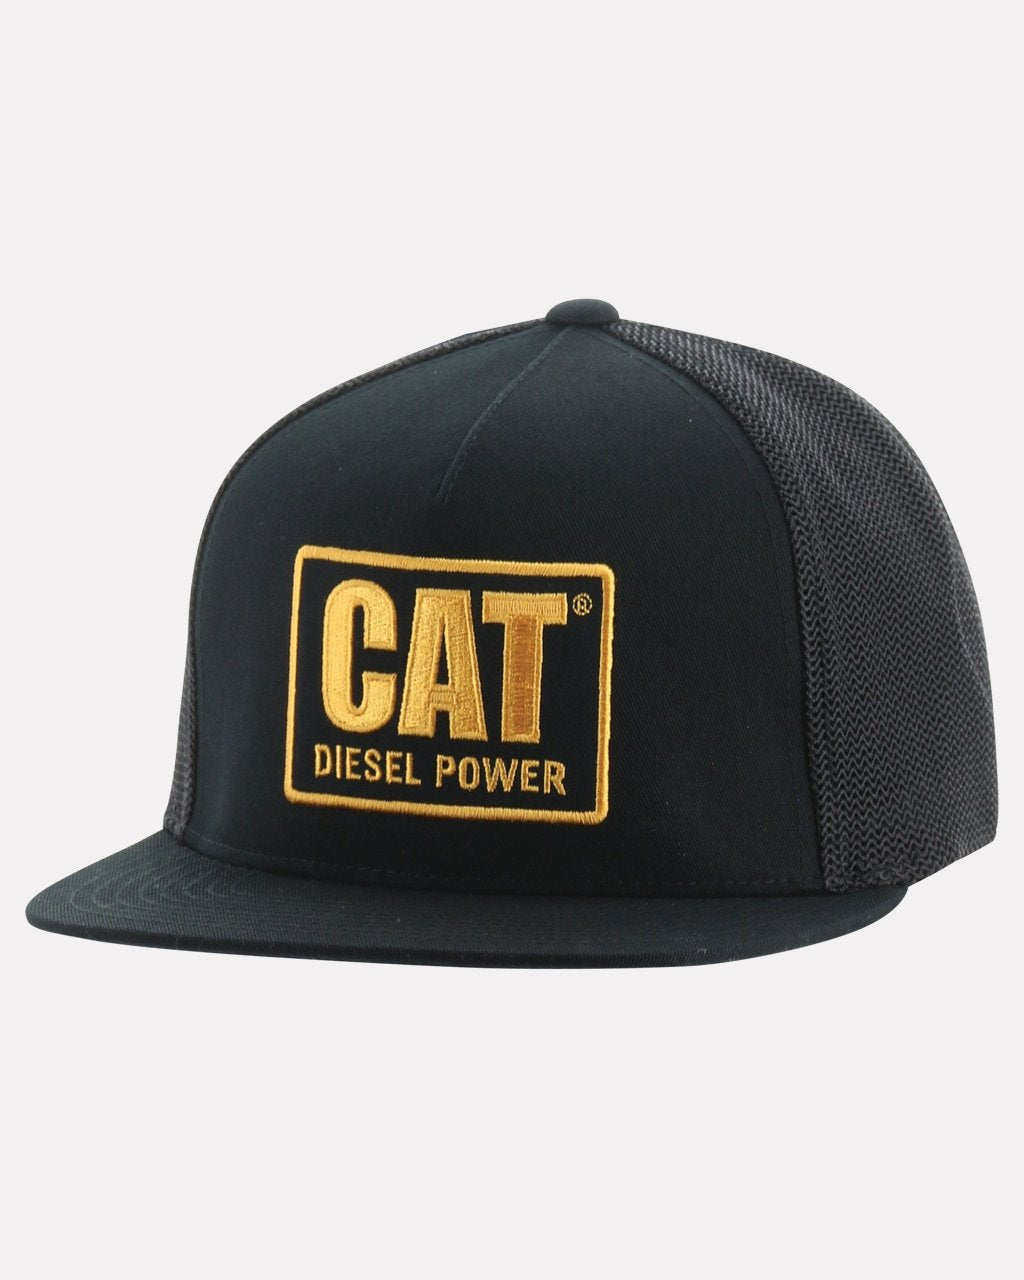 CAT Diesel Power Flat Bill Cap - Work World - Workwear, Work Boots, Safety Gear